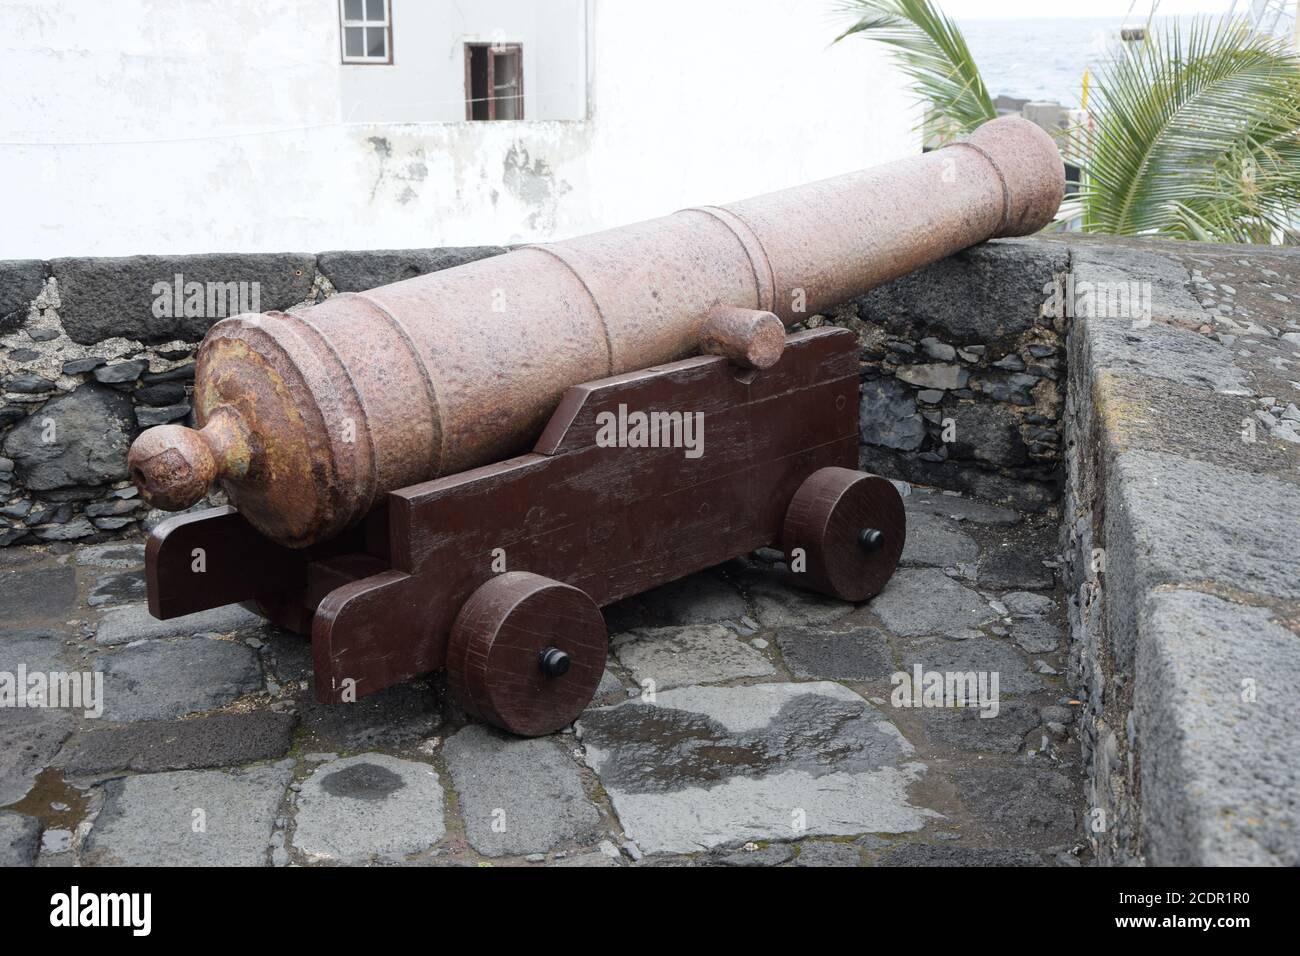 Cannon in the fort of Santa Cuz de La Palma Stock Photo